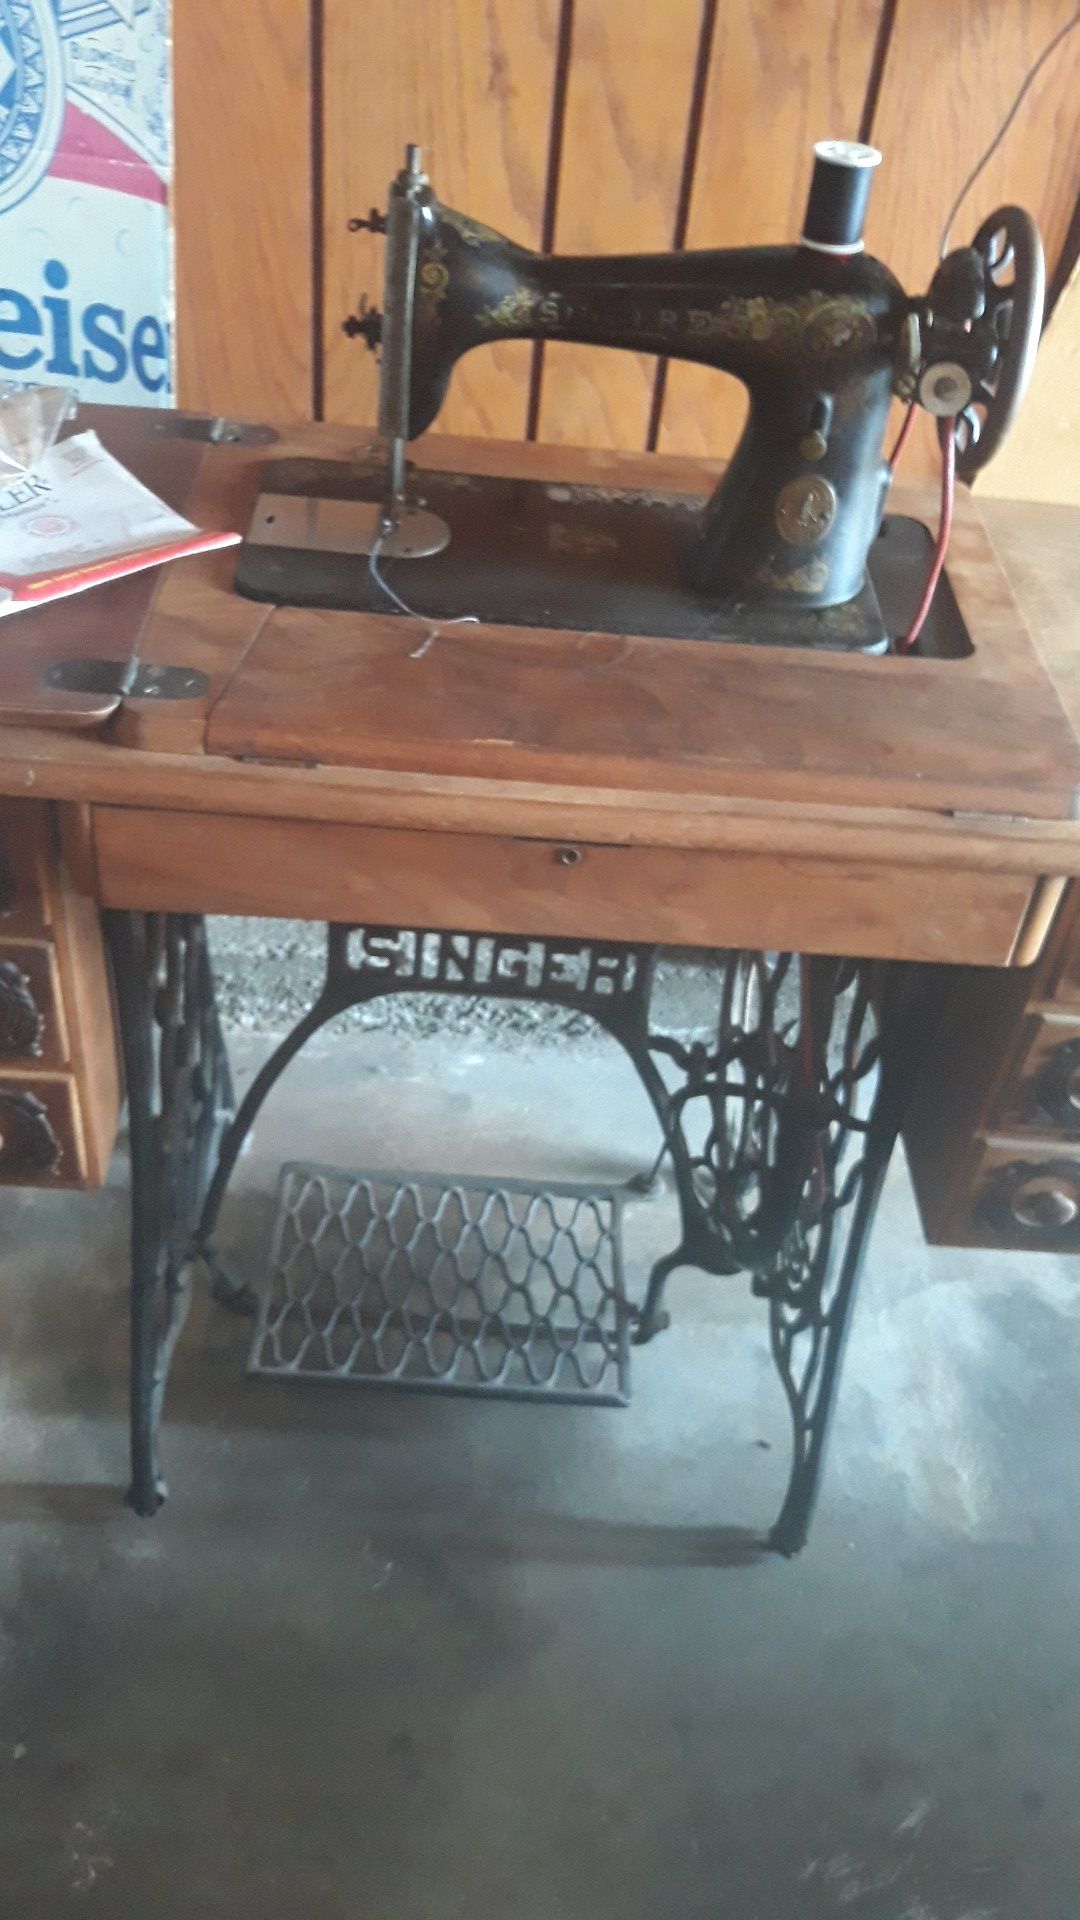 Singer sewing model 24 serial #N142784